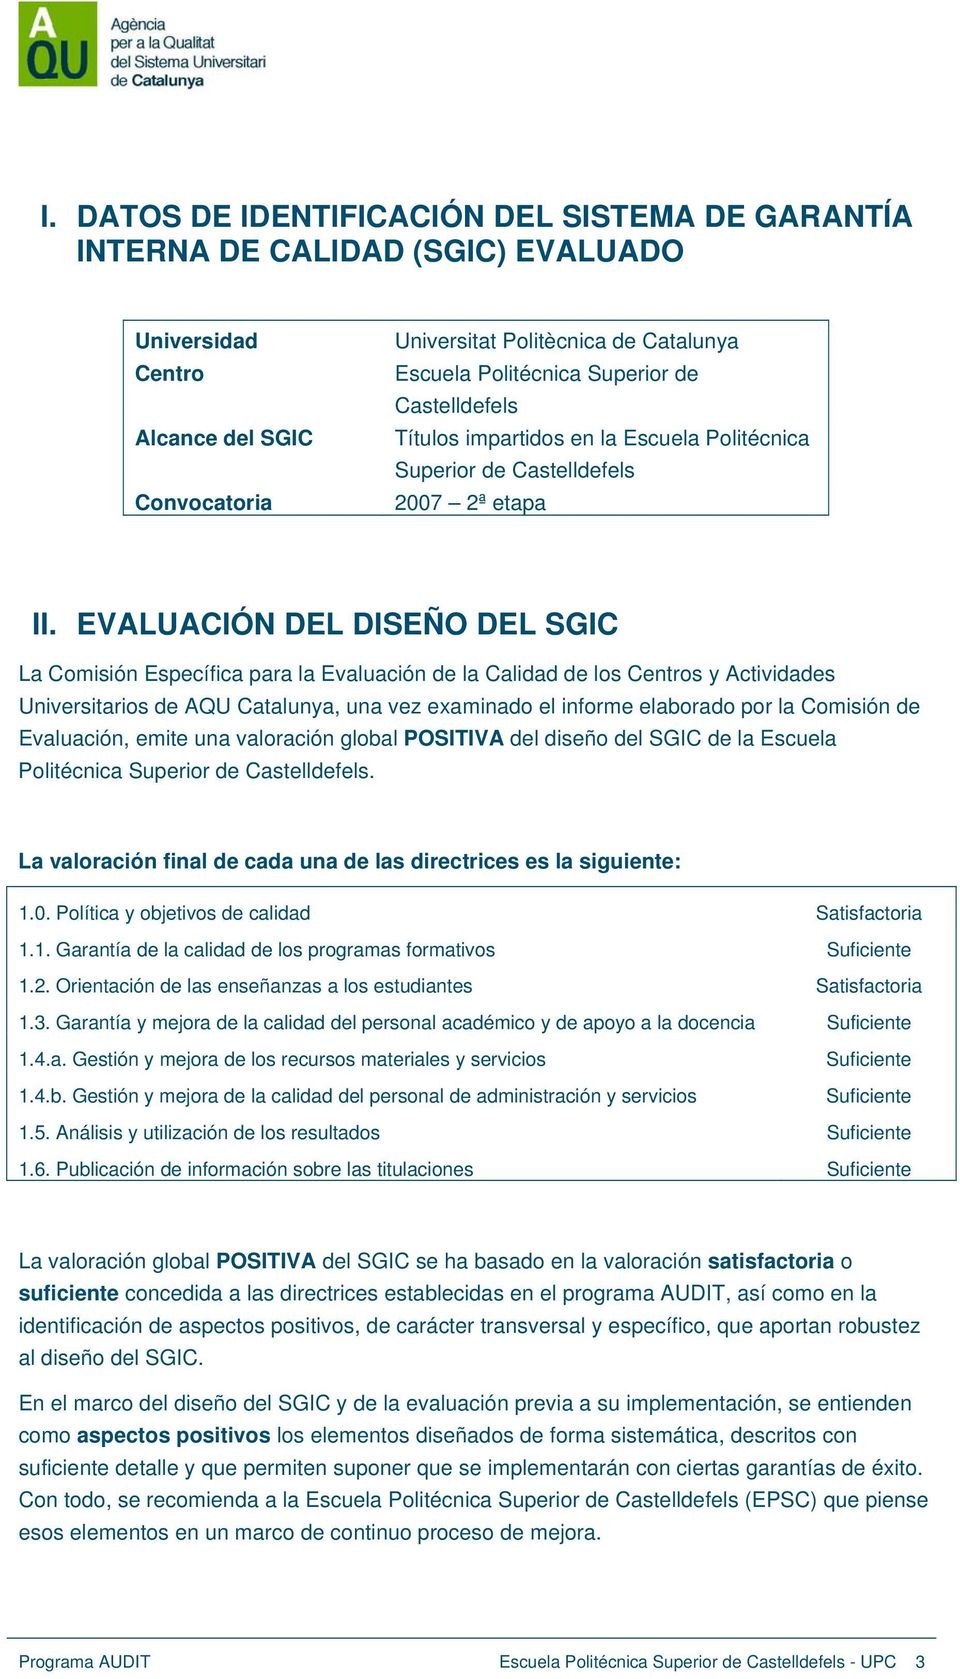 EVALUACIÓN DEL DISEÑO DEL SGIC La Comisión Específica para la Evaluación de la Calidad de los Centros y Actividades Universitarios de AQU Catalunya, una vez examinado el informe elaborado por la